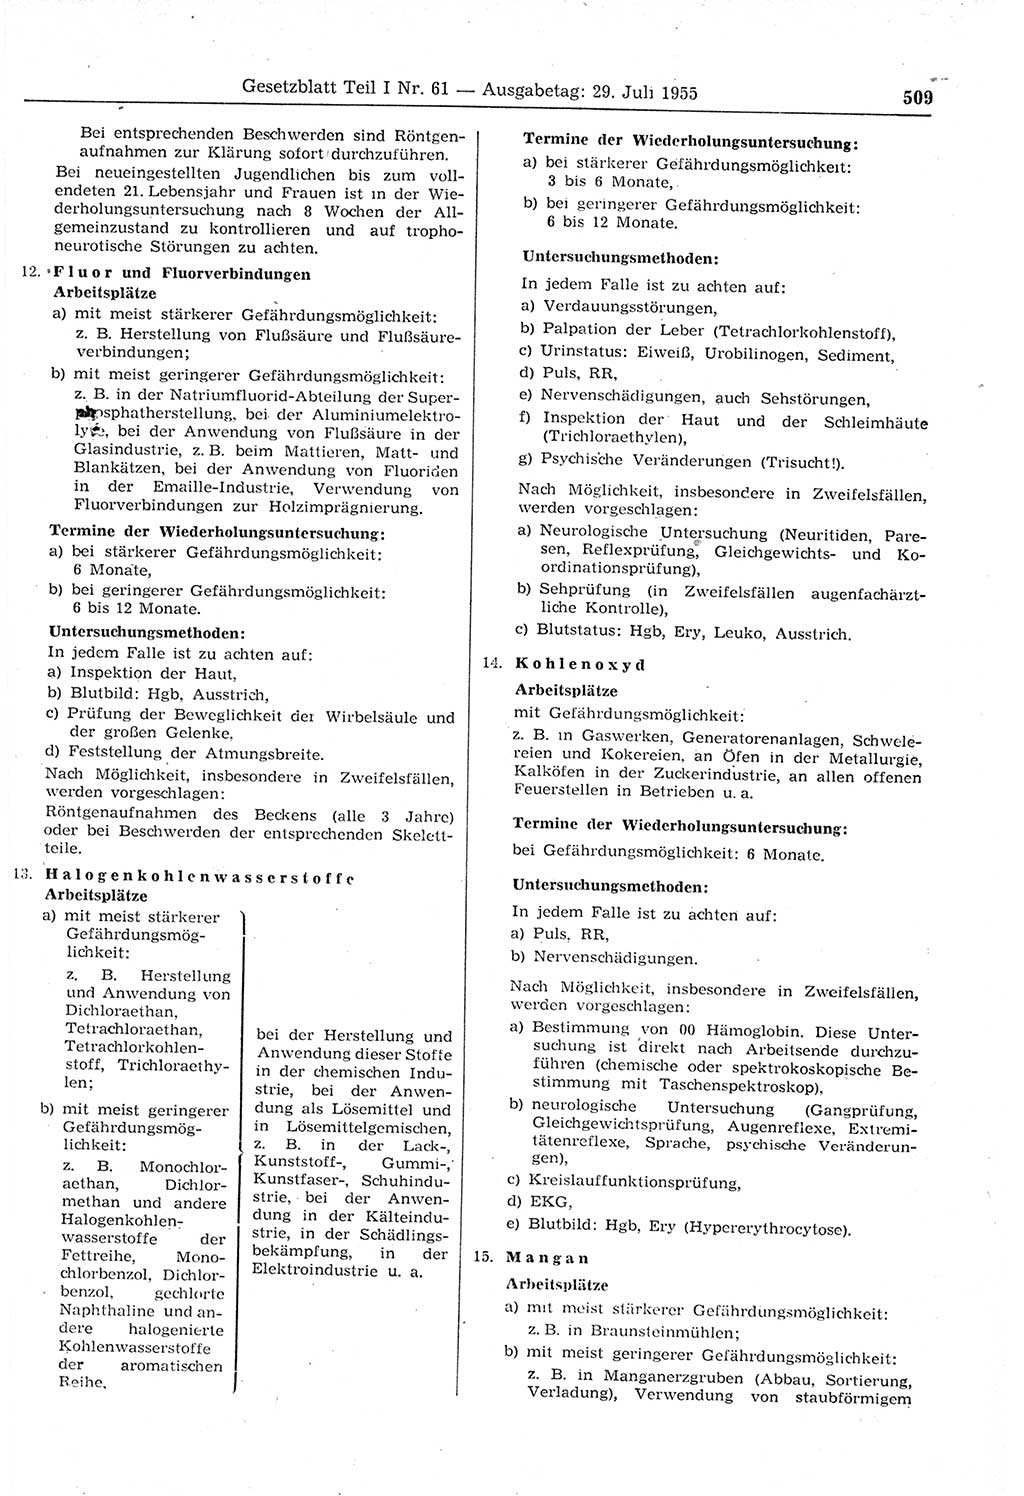 Gesetzblatt (GBl.) der Deutschen Demokratischen Republik (DDR) Teil Ⅰ 1955, Seite 509 (GBl. DDR Ⅰ 1955, S. 509)